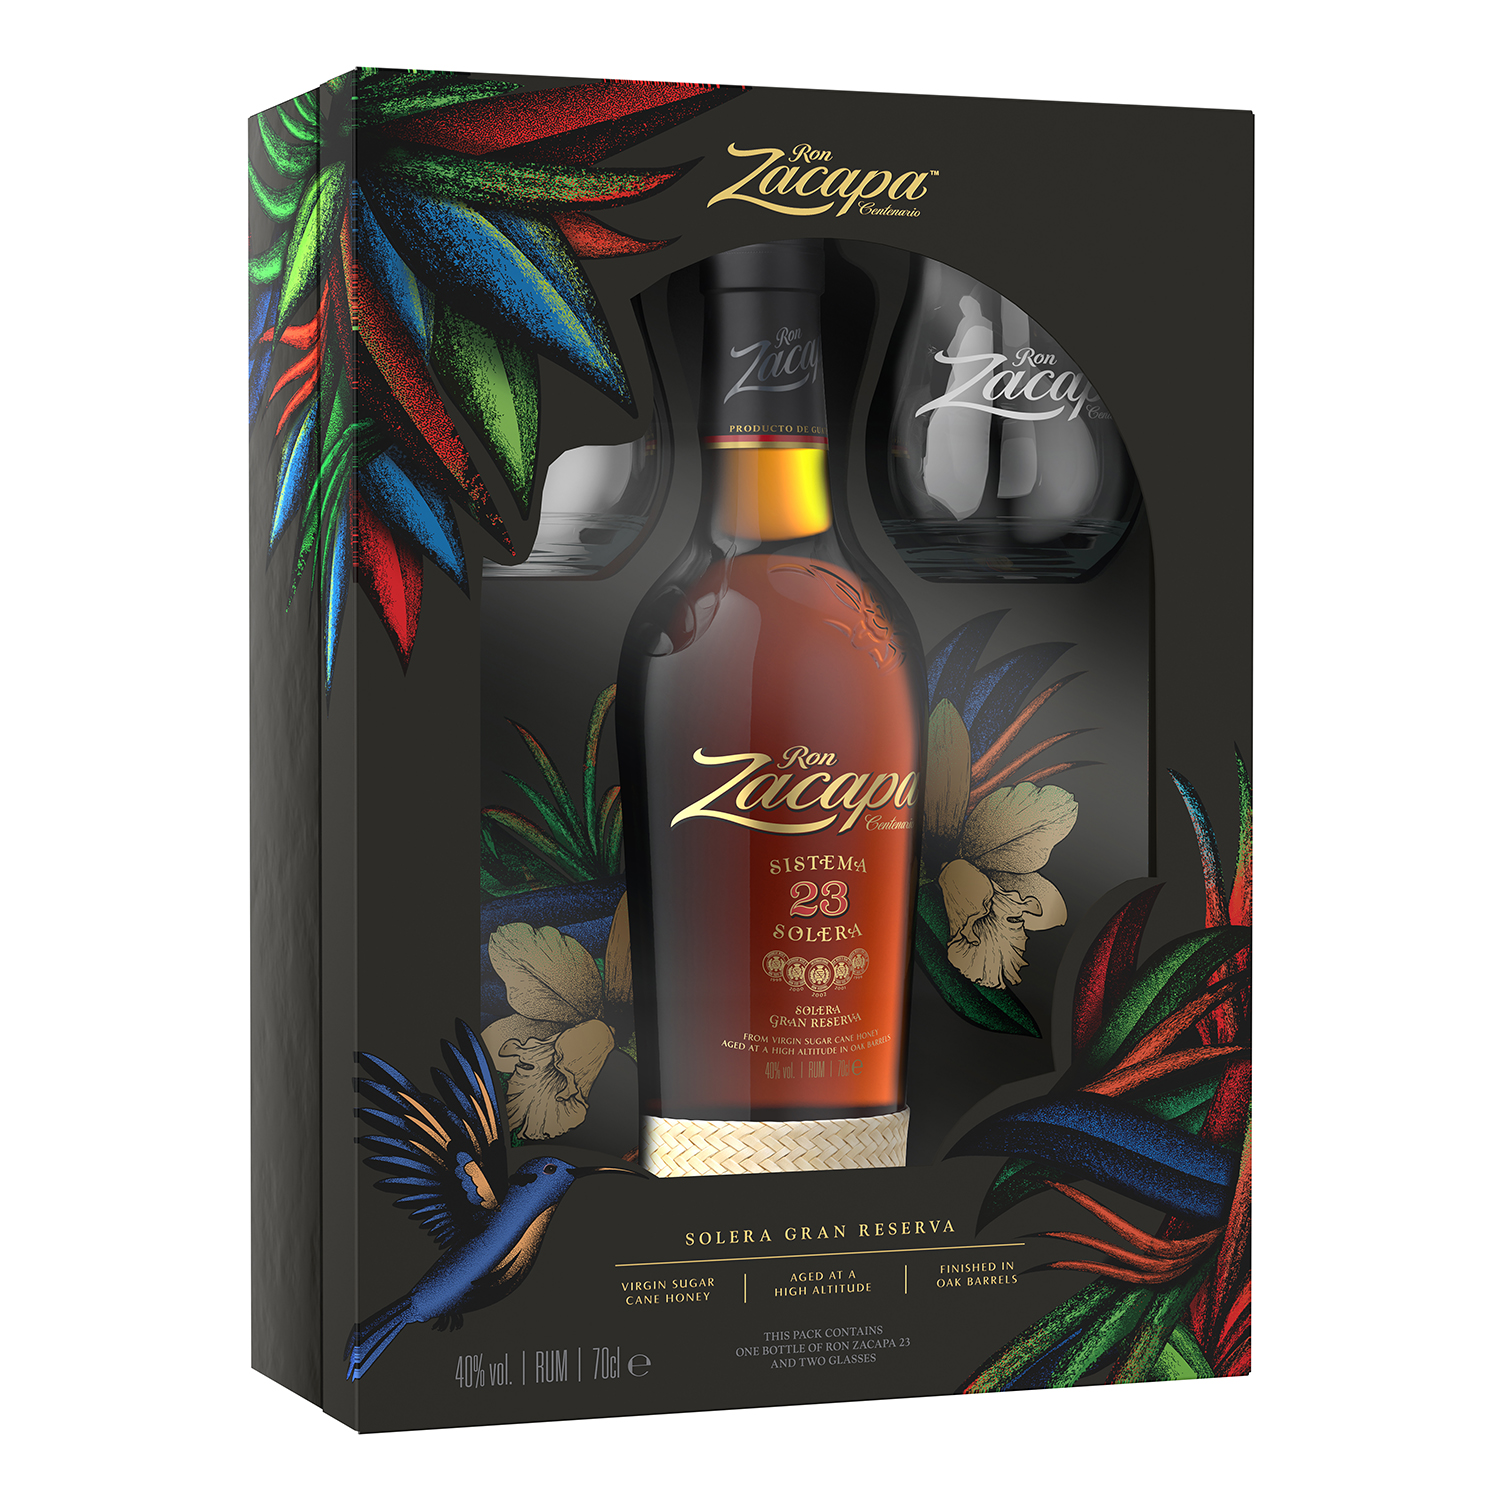 RON ZACAPA 23 Jahre Rum 40% vol., 0,7l + 2 Gläser